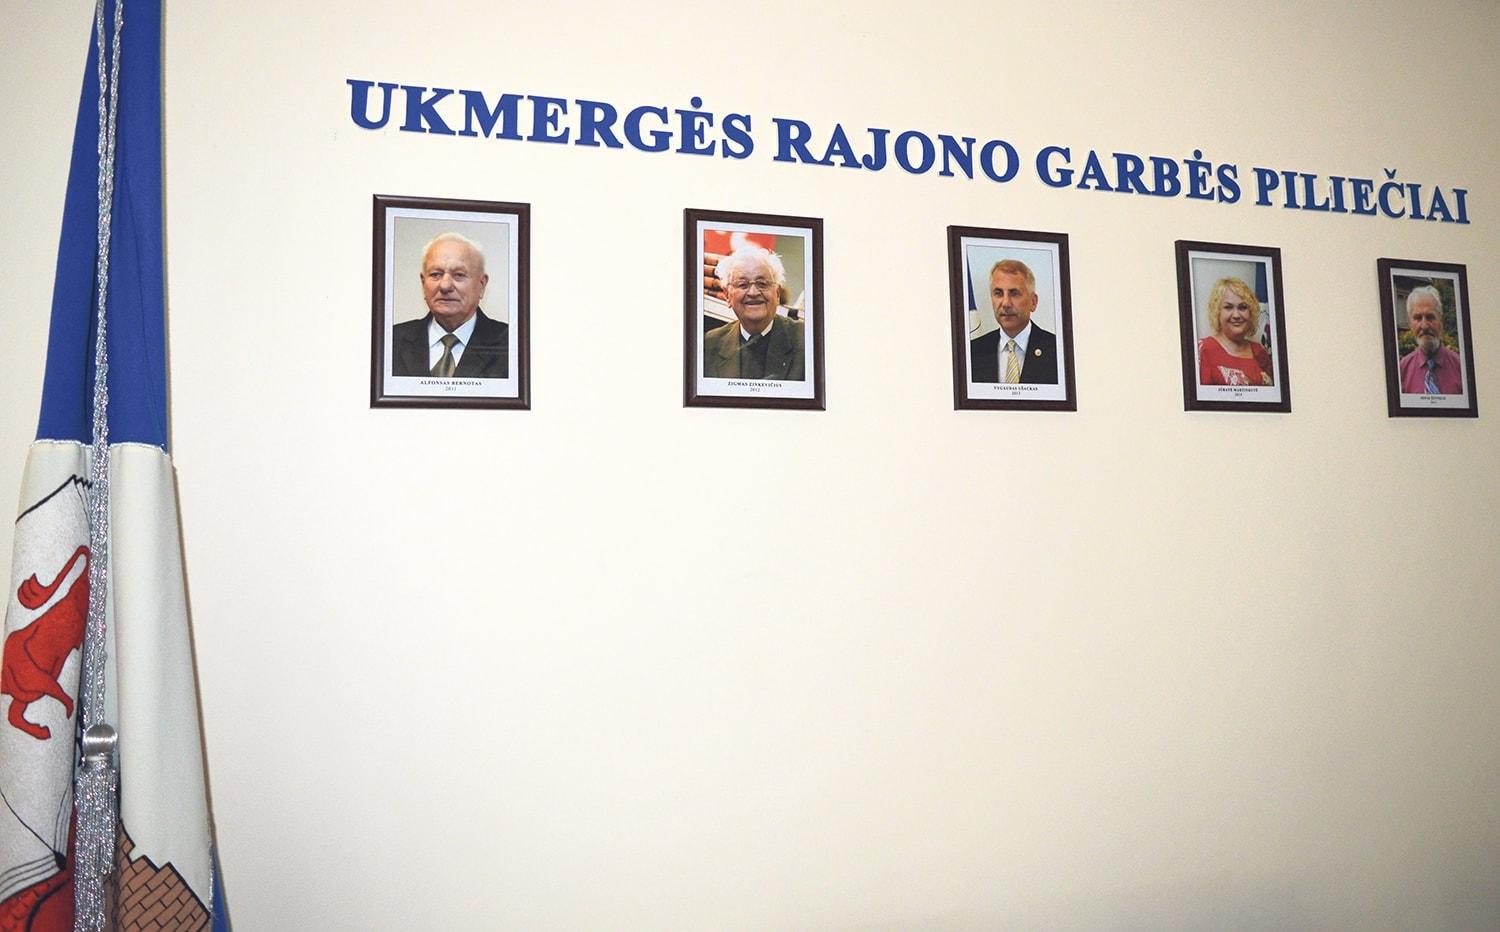 Garbės piliečio rinkimuose – trys kandidatai / Savivaldybės posėdžių salėje – Garbės piliečių nuotraukos.